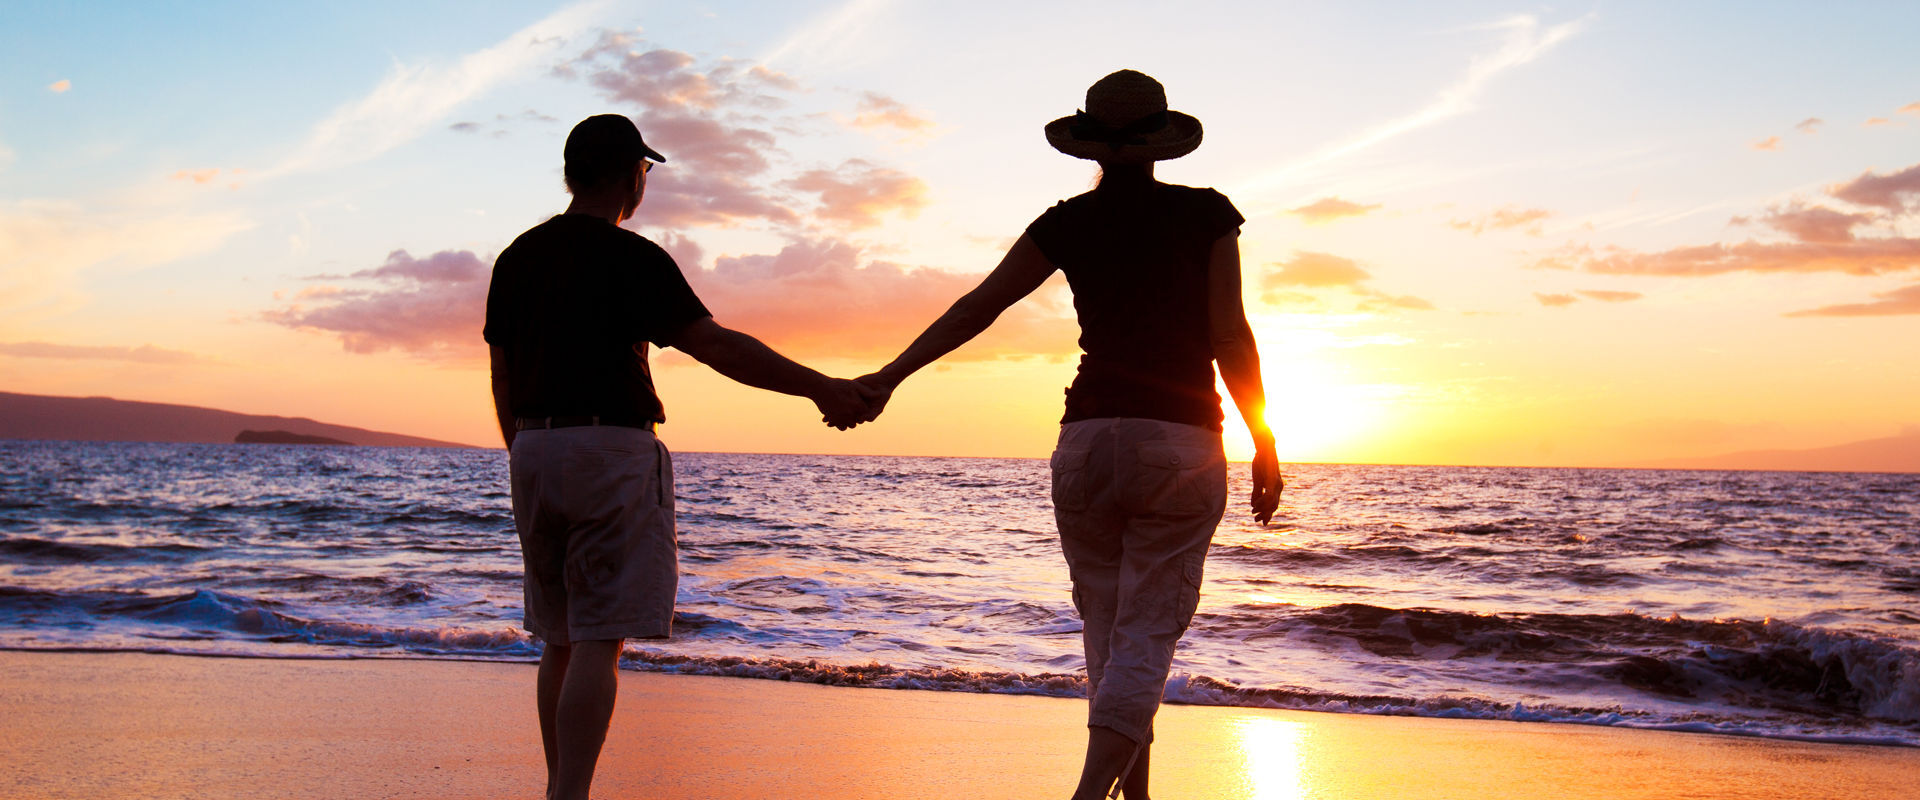 Paare, die Sonnenuntergang am Strand genießen